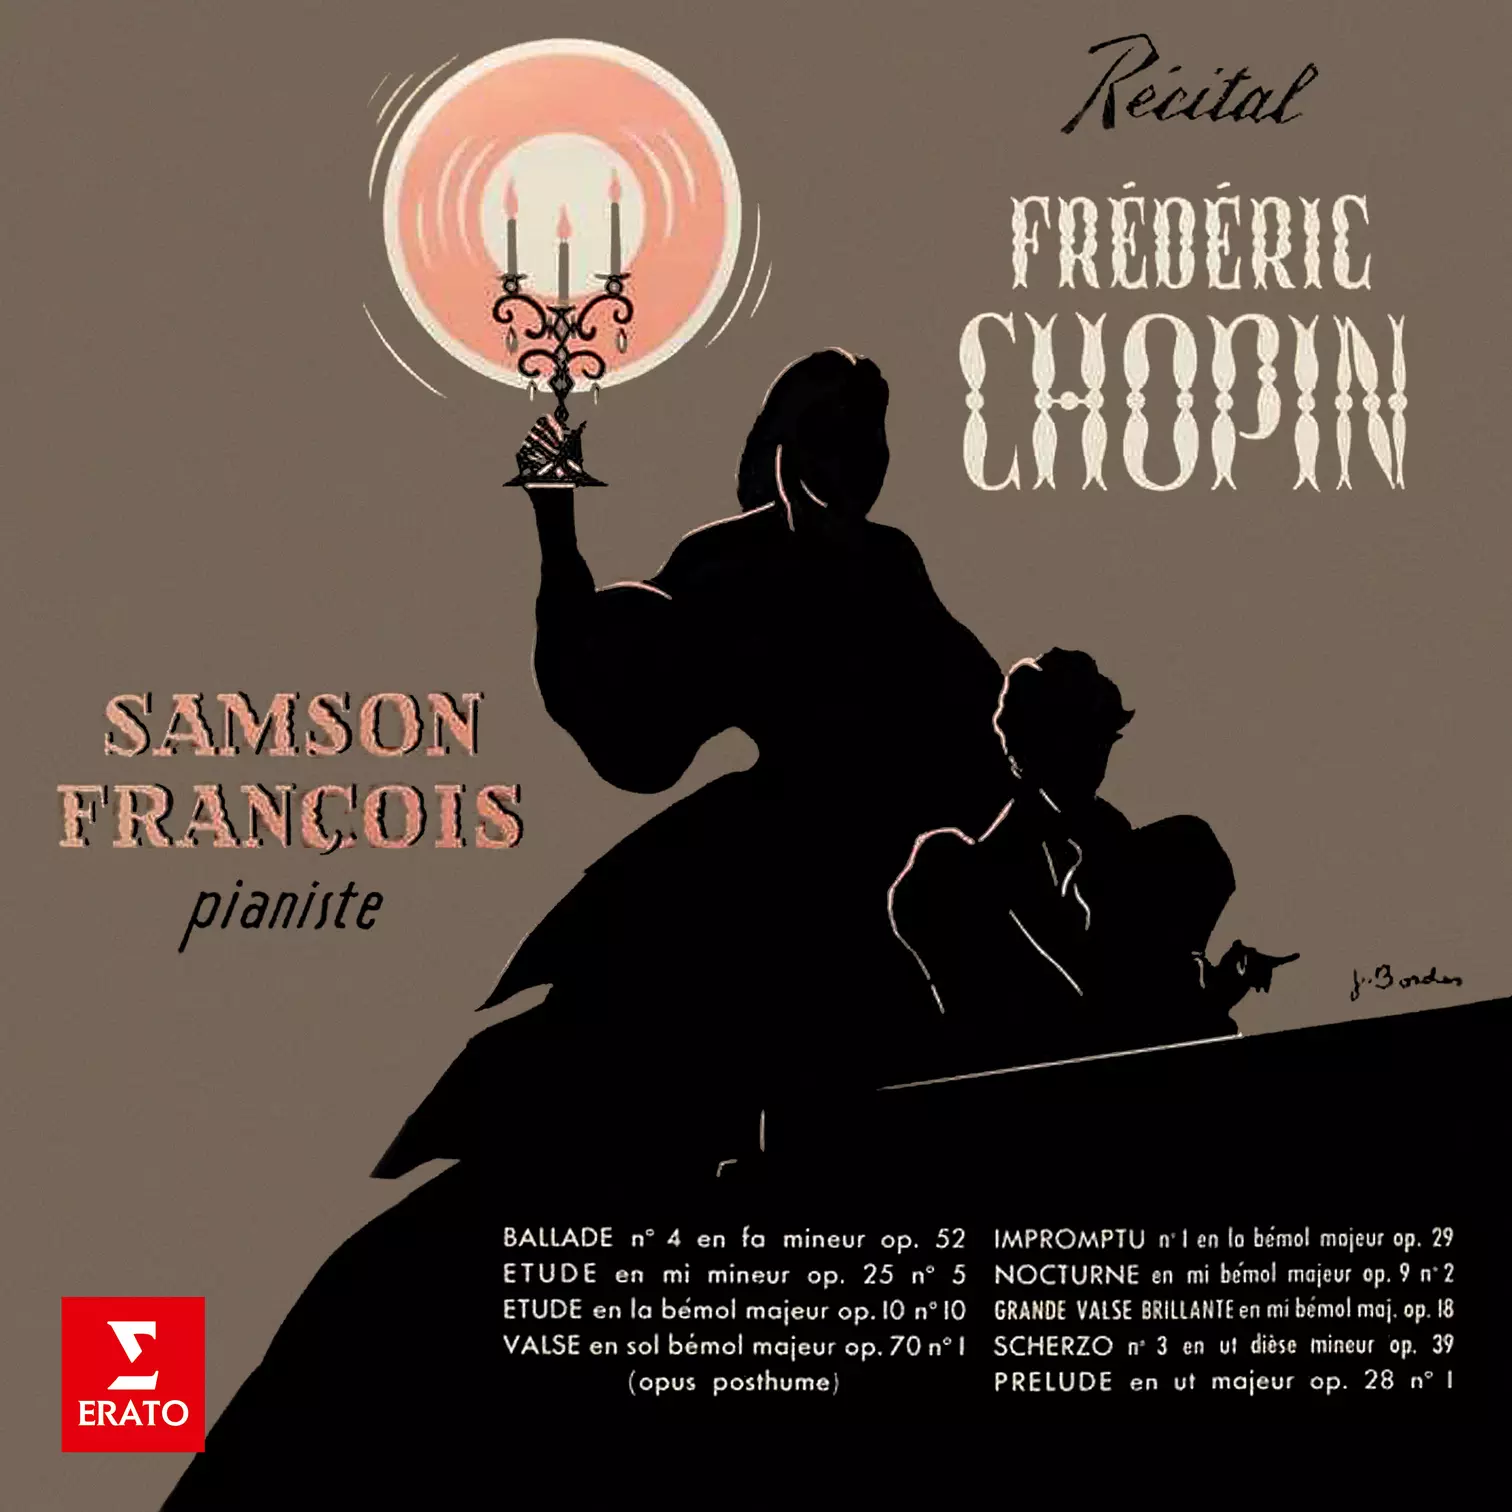 Récital Frédéric Chopin